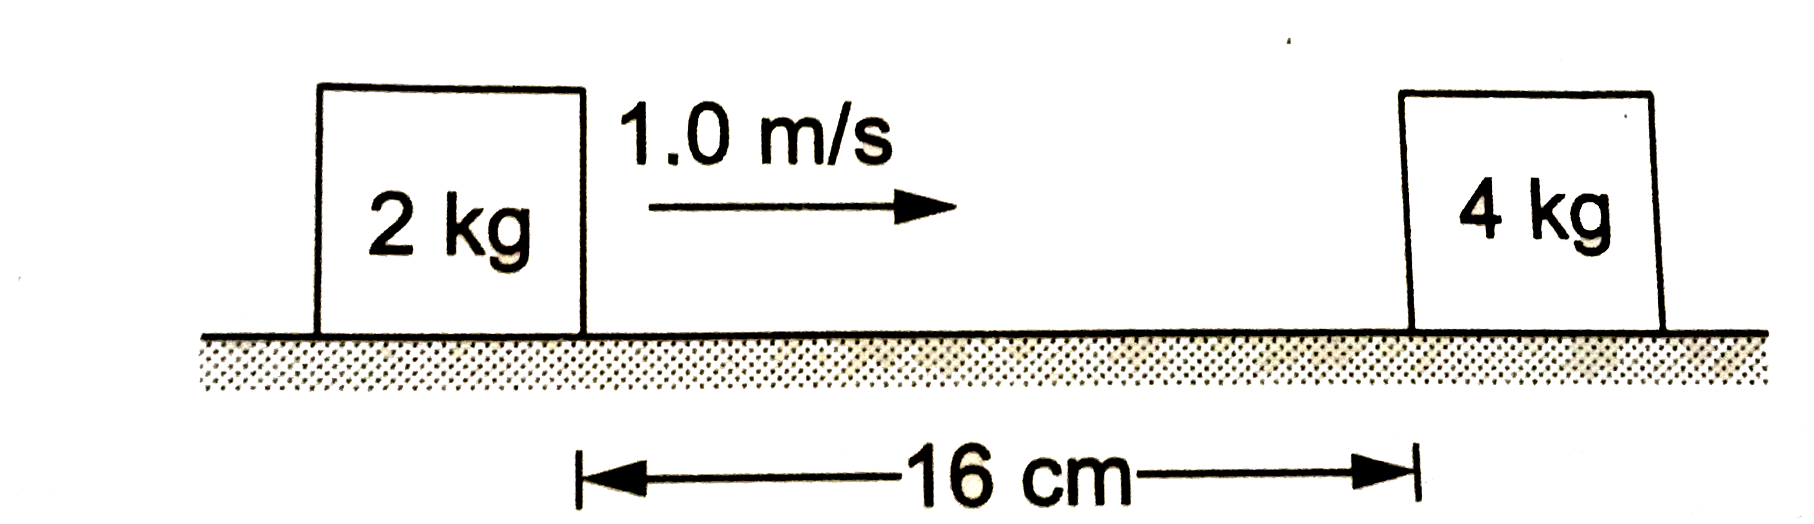 चित्र  में दिखाए गए गुटकों तथा क्षैतिज सतह के बीच घर्षण गुणांक 0.20 है। गुटकों के बीच टक्कर पूर्णतया प्रत्यास्थ है। जब दोनों गुटके टक्कर के बाद अपनी-अपनी विराम अवस्था में आ जाते हैं, तब इनके बीच की दूरी ज्ञात करें। g=10m//s^(2) ले।